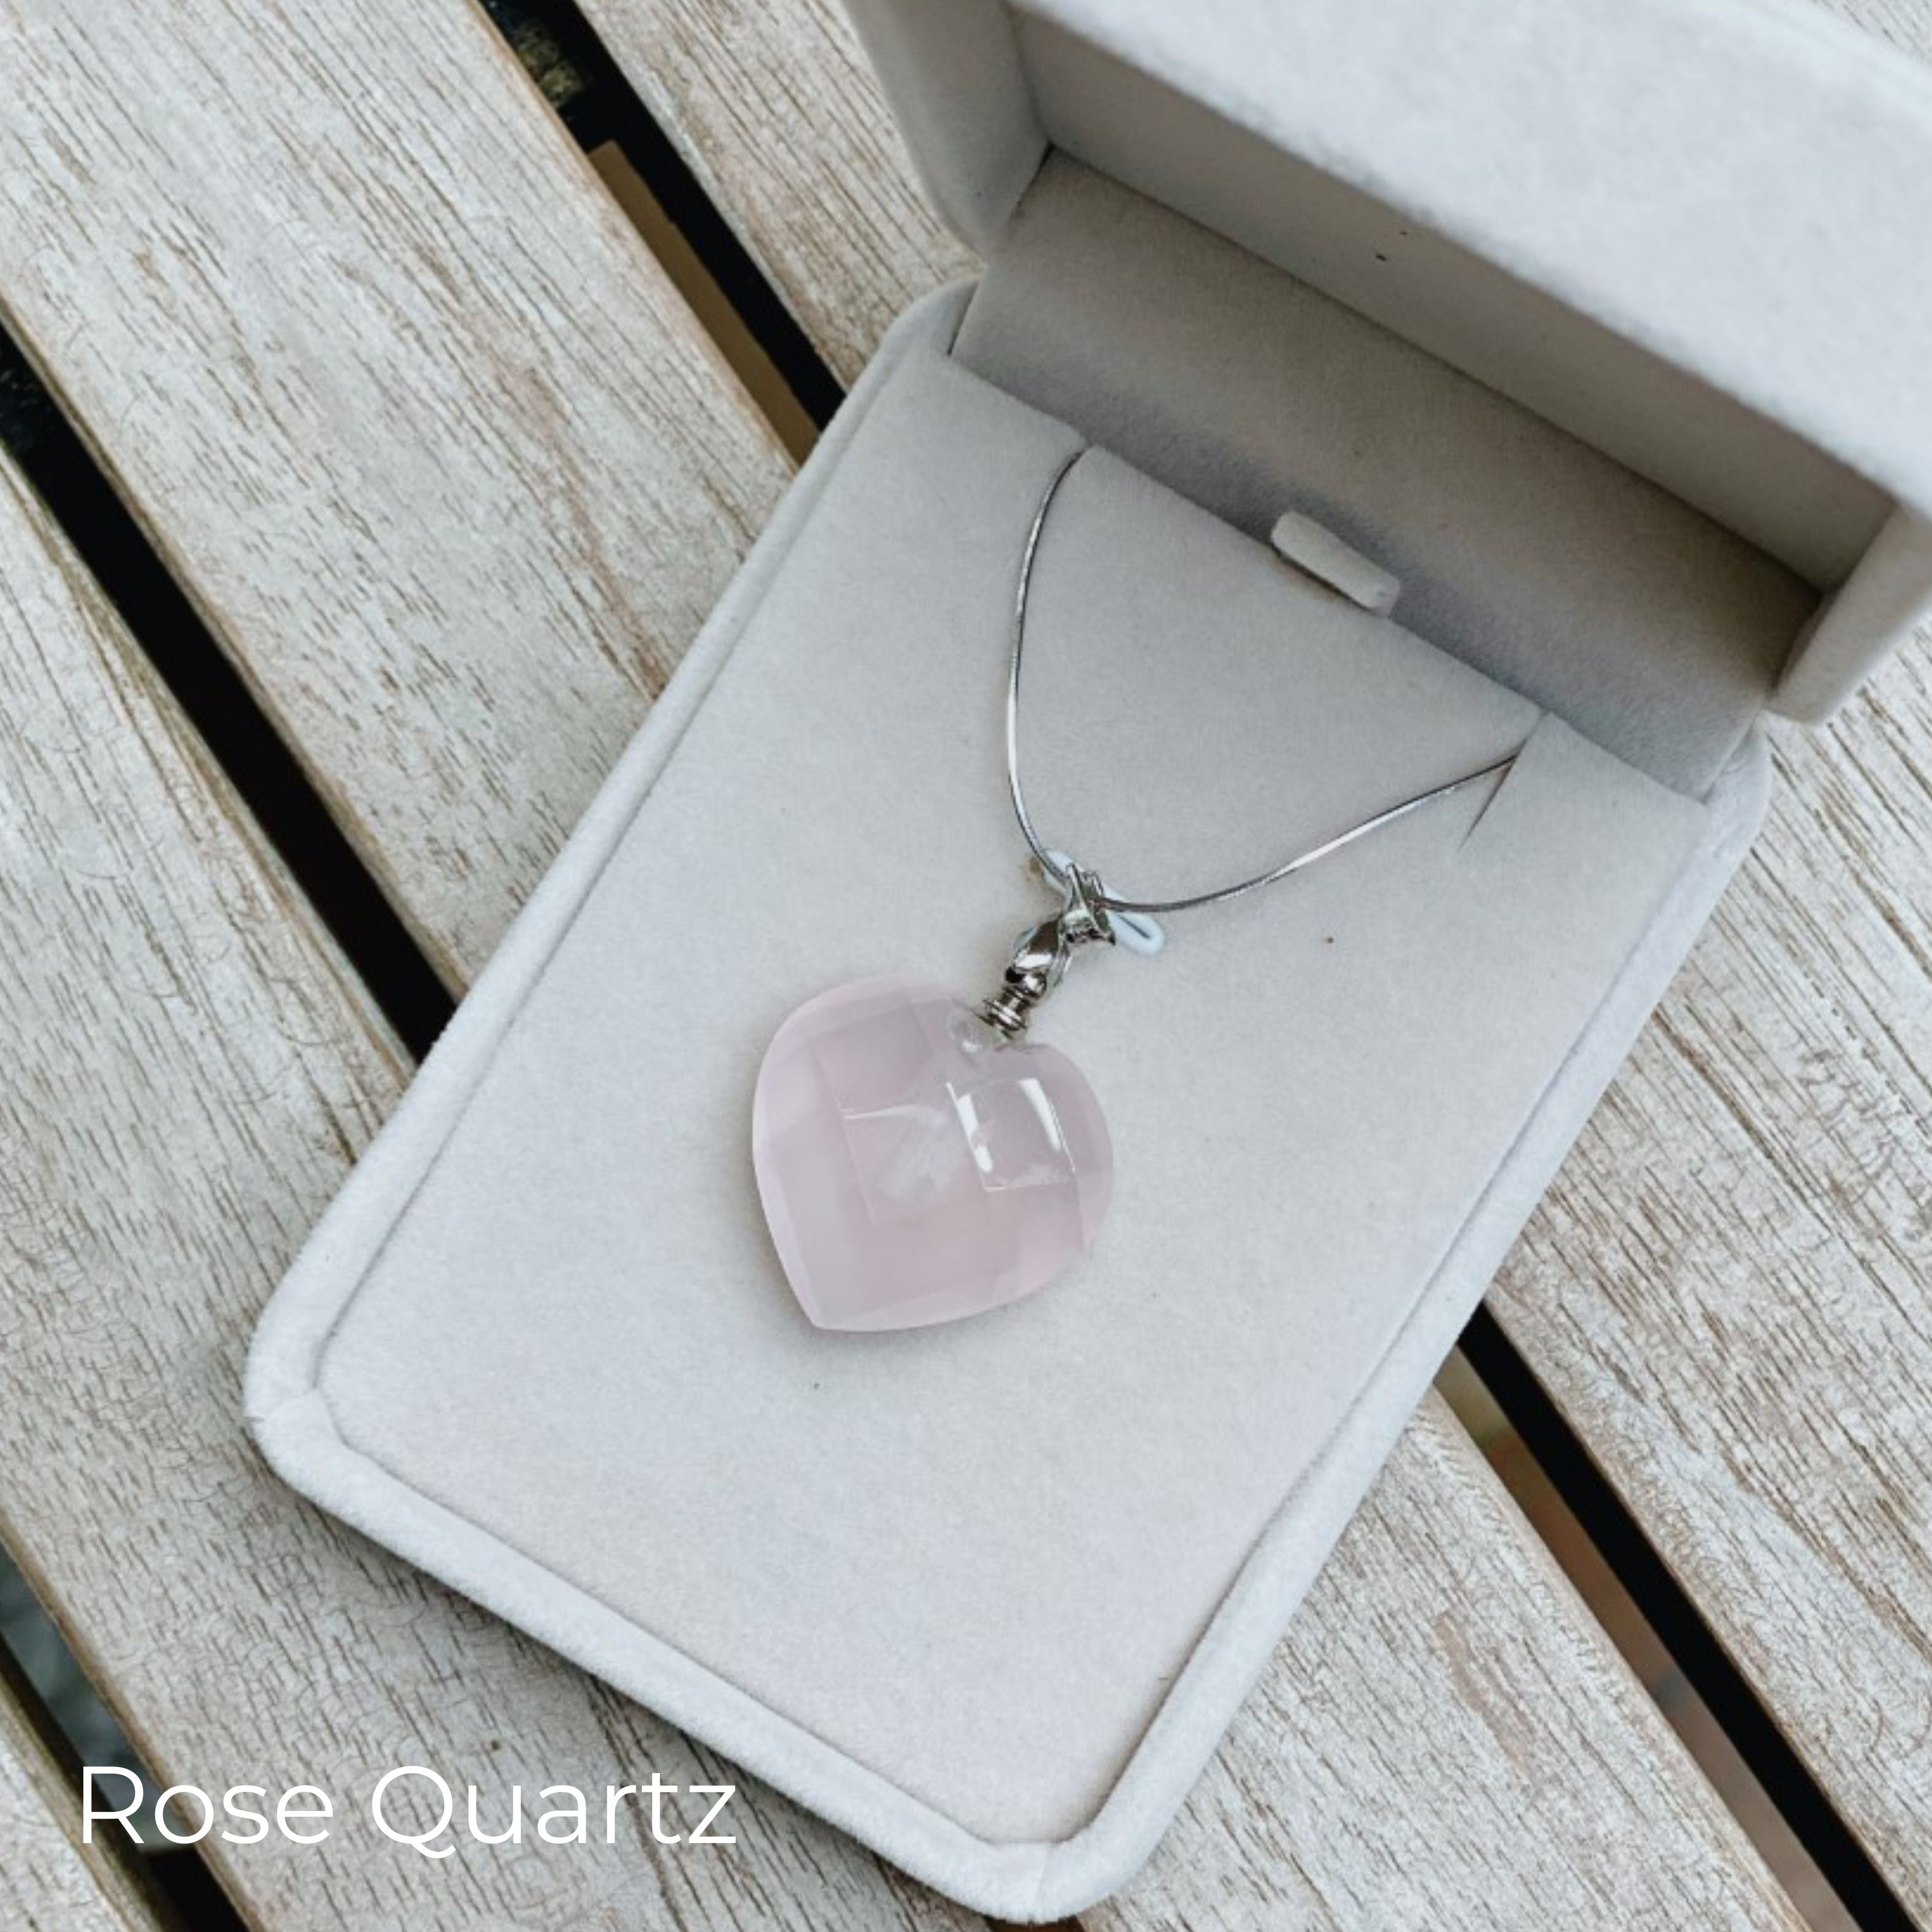 Tish - Rose Quartz Heart Necklace – Uppdoo Design Studio